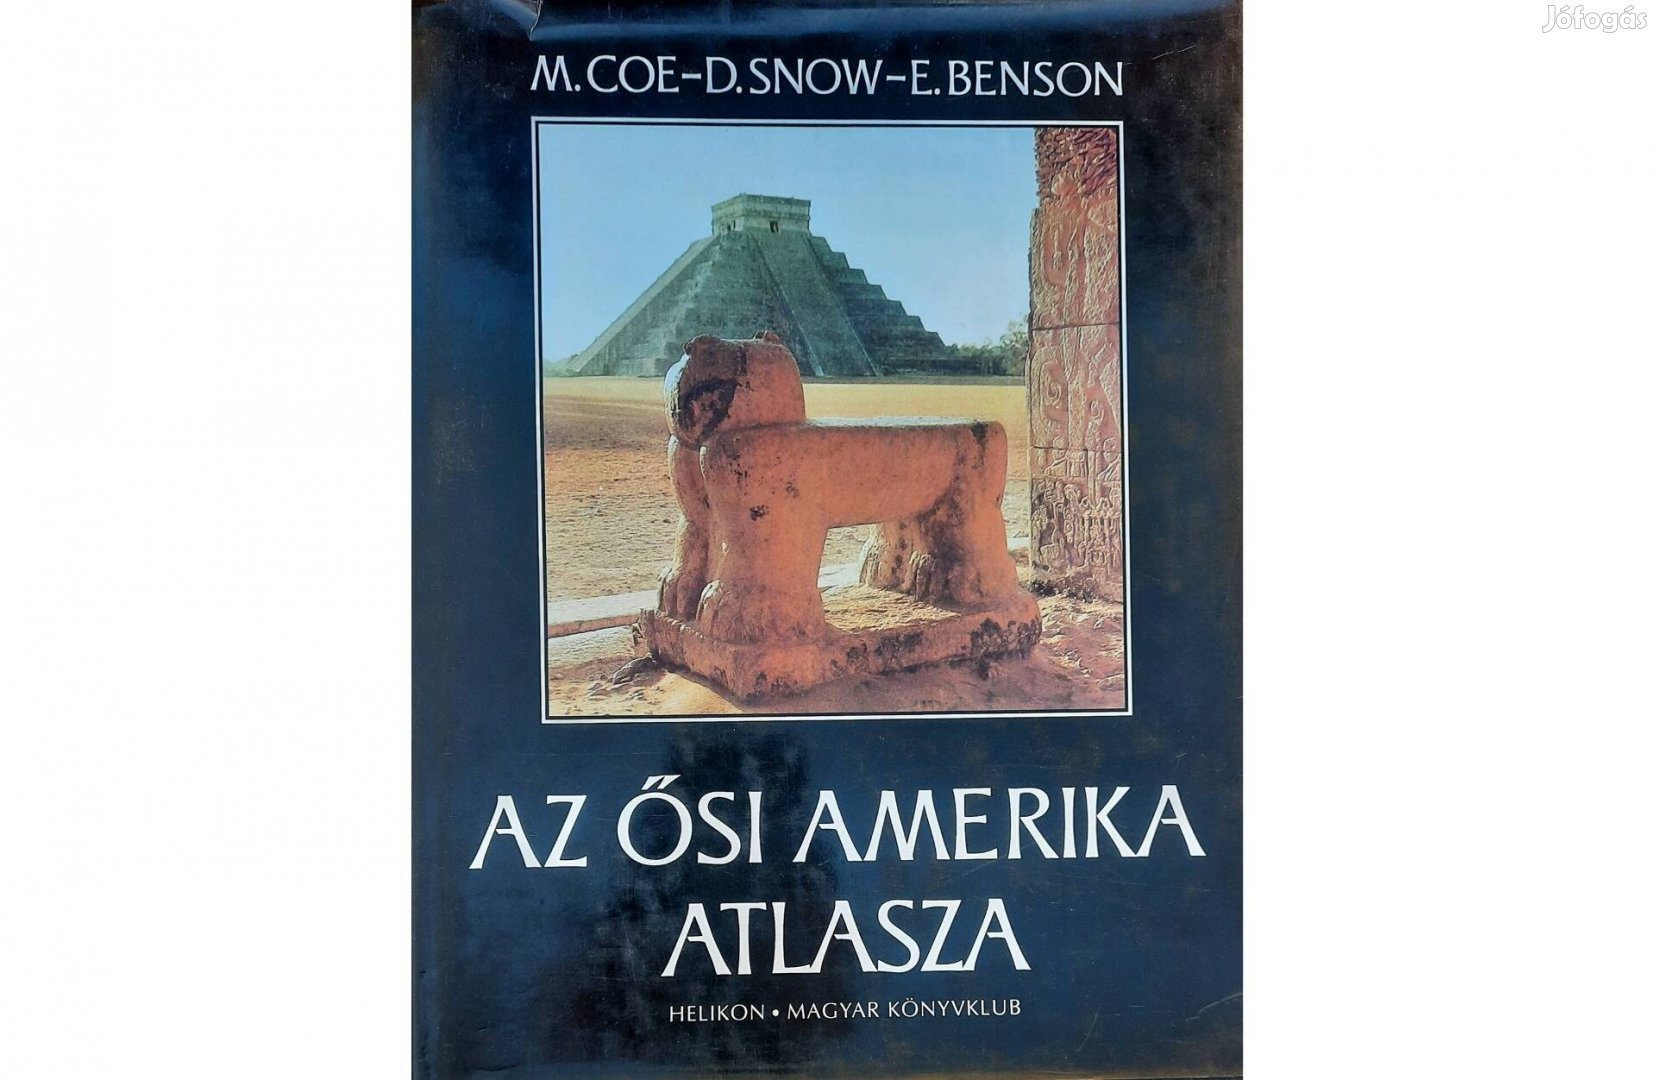 Az ősi Amerika atlasza című könyv eladó